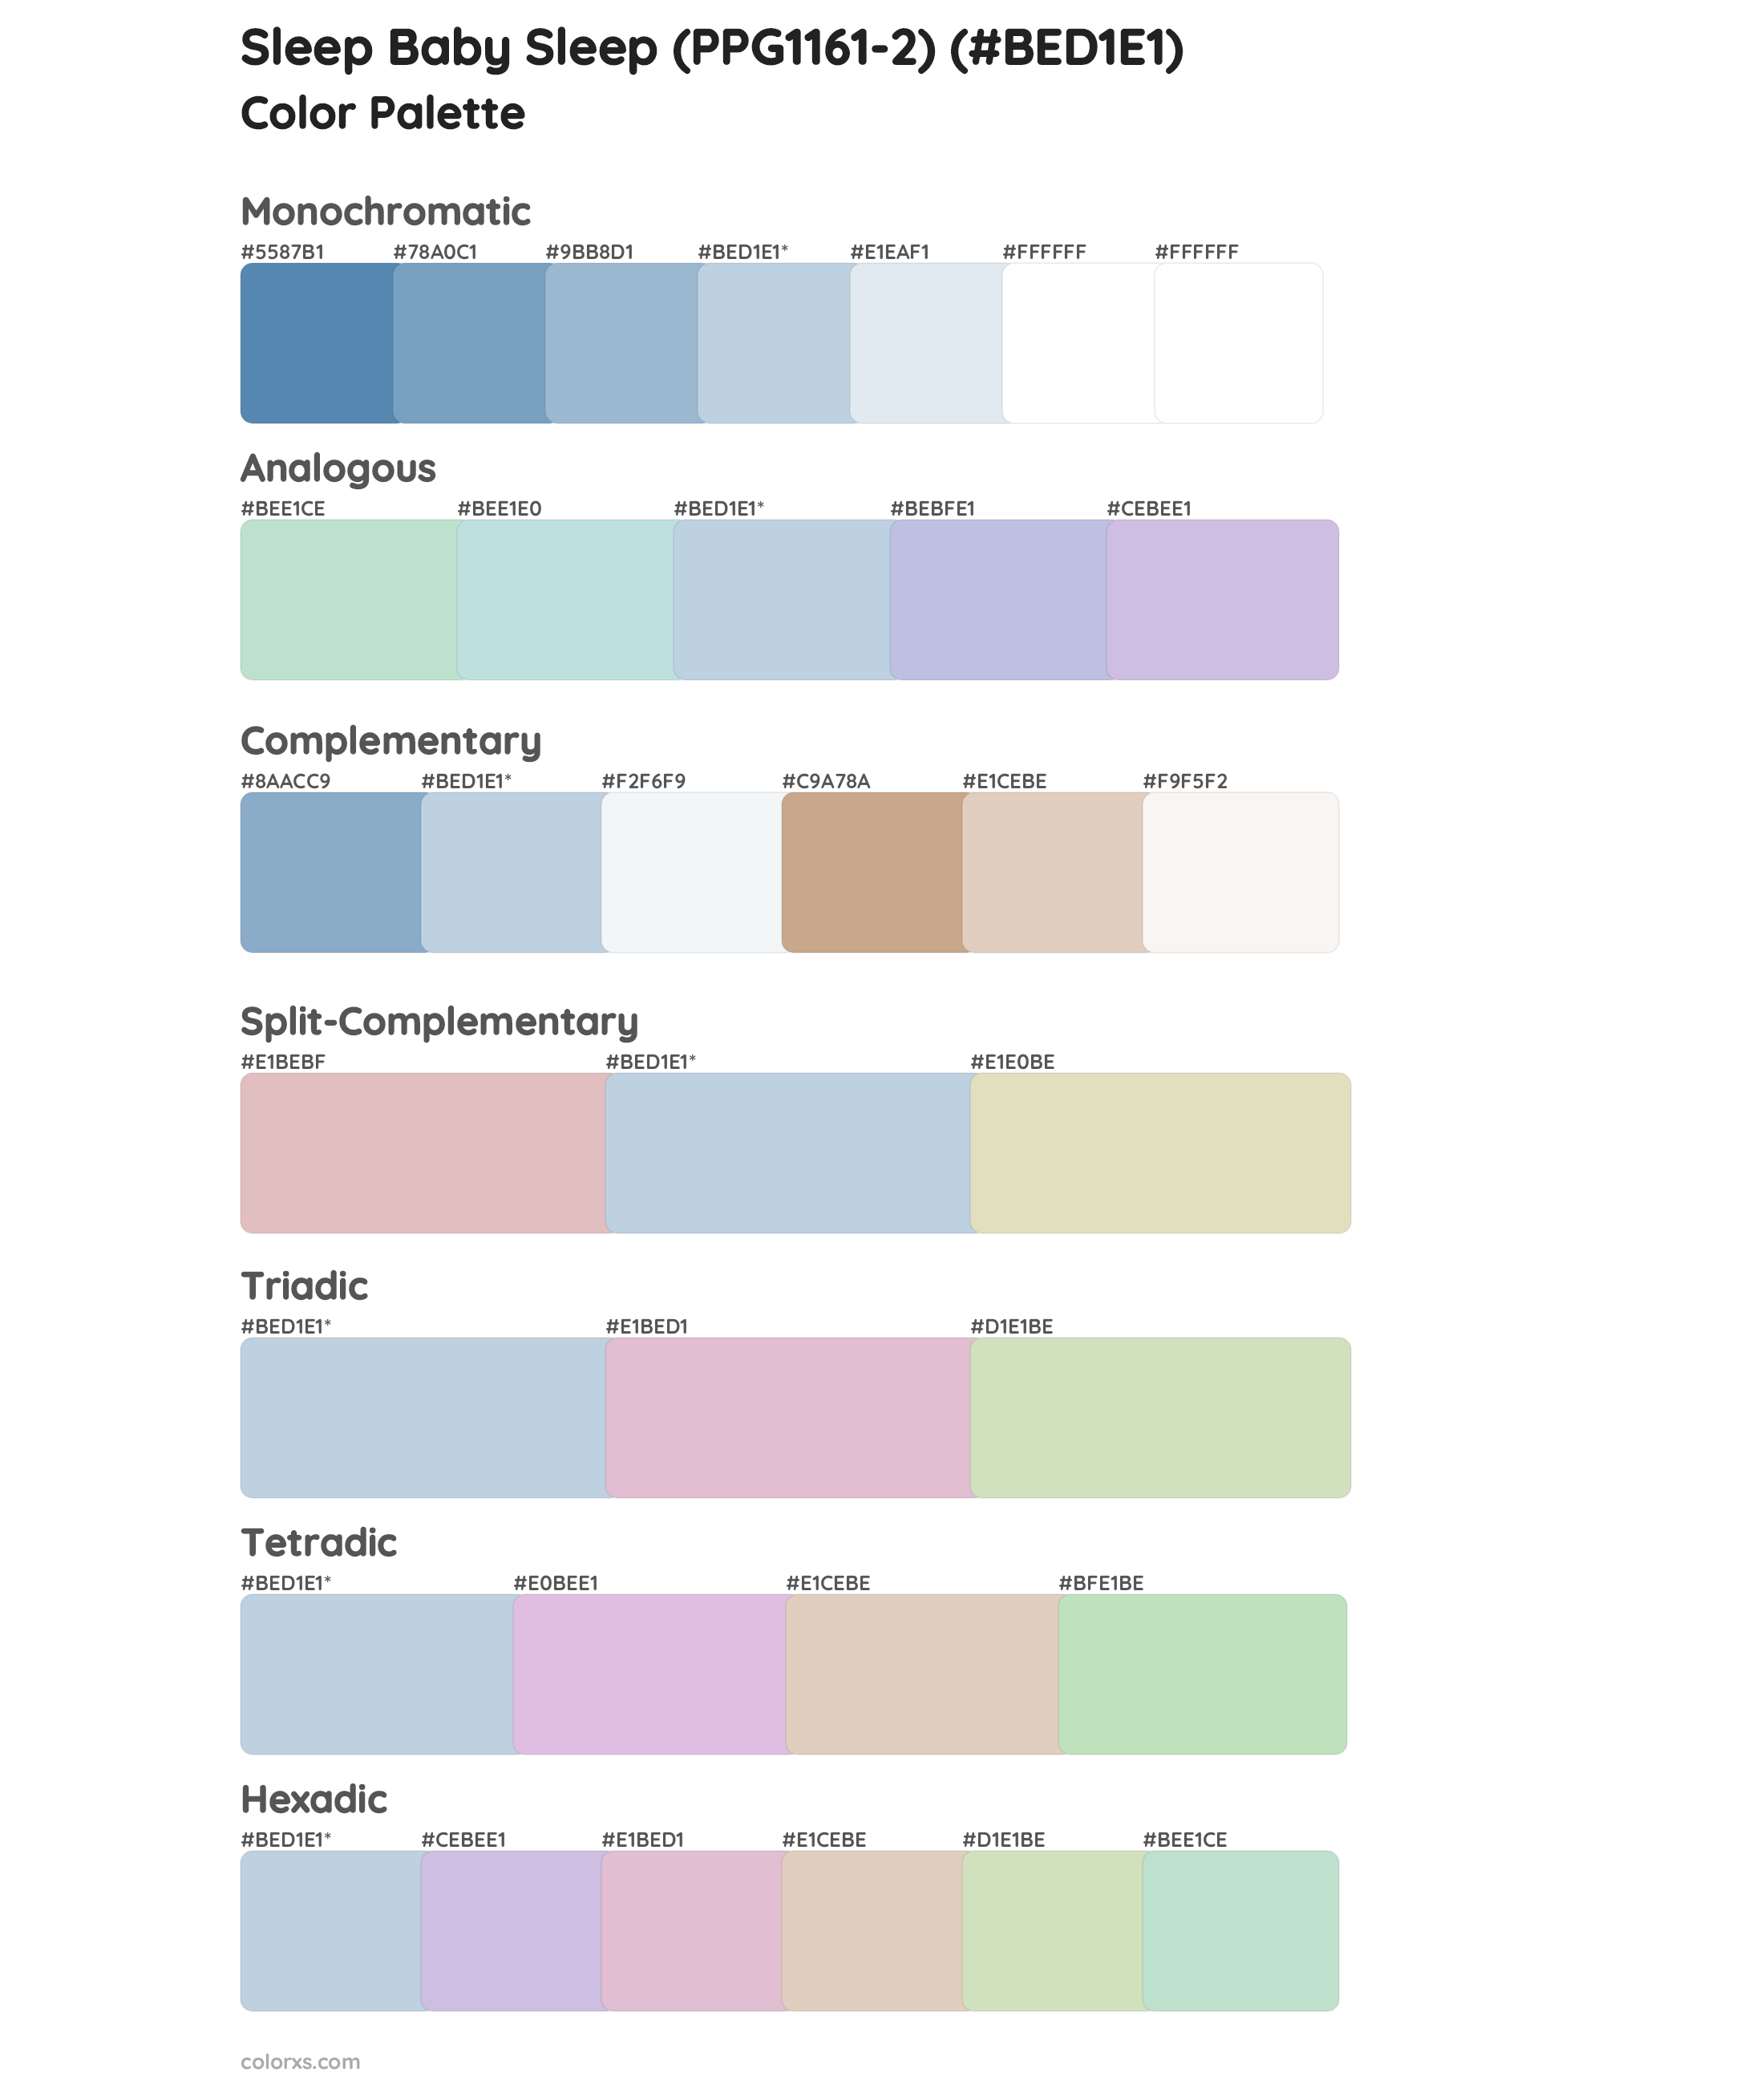 Sleep Baby Sleep (PPG1161-2) Color Scheme Palettes